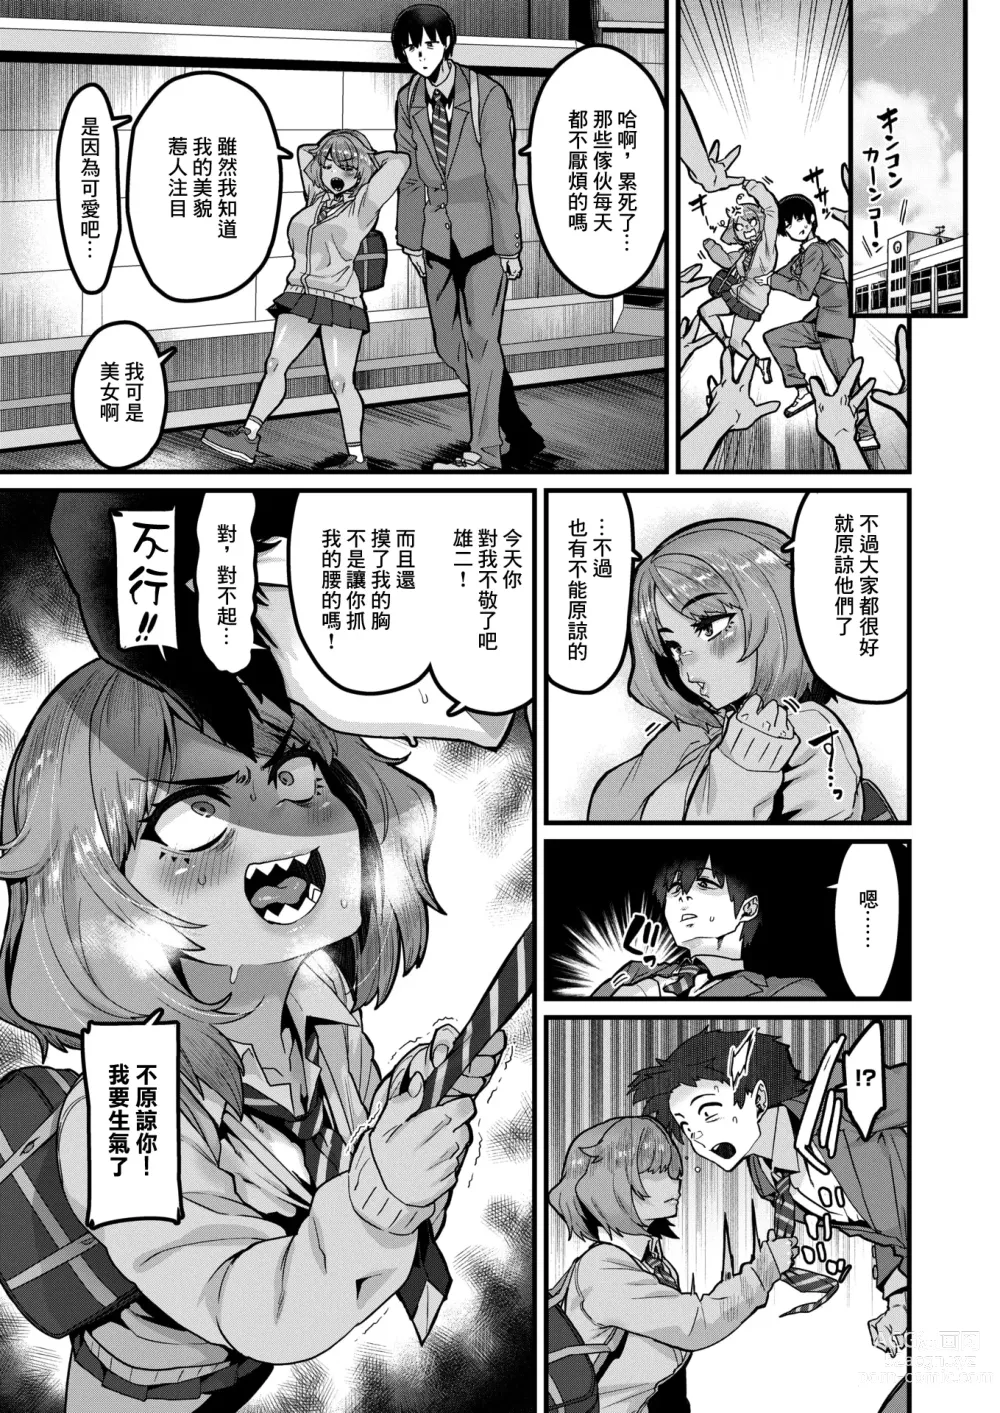 Page 5 of manga Tarinai Mono wa Oginatte!